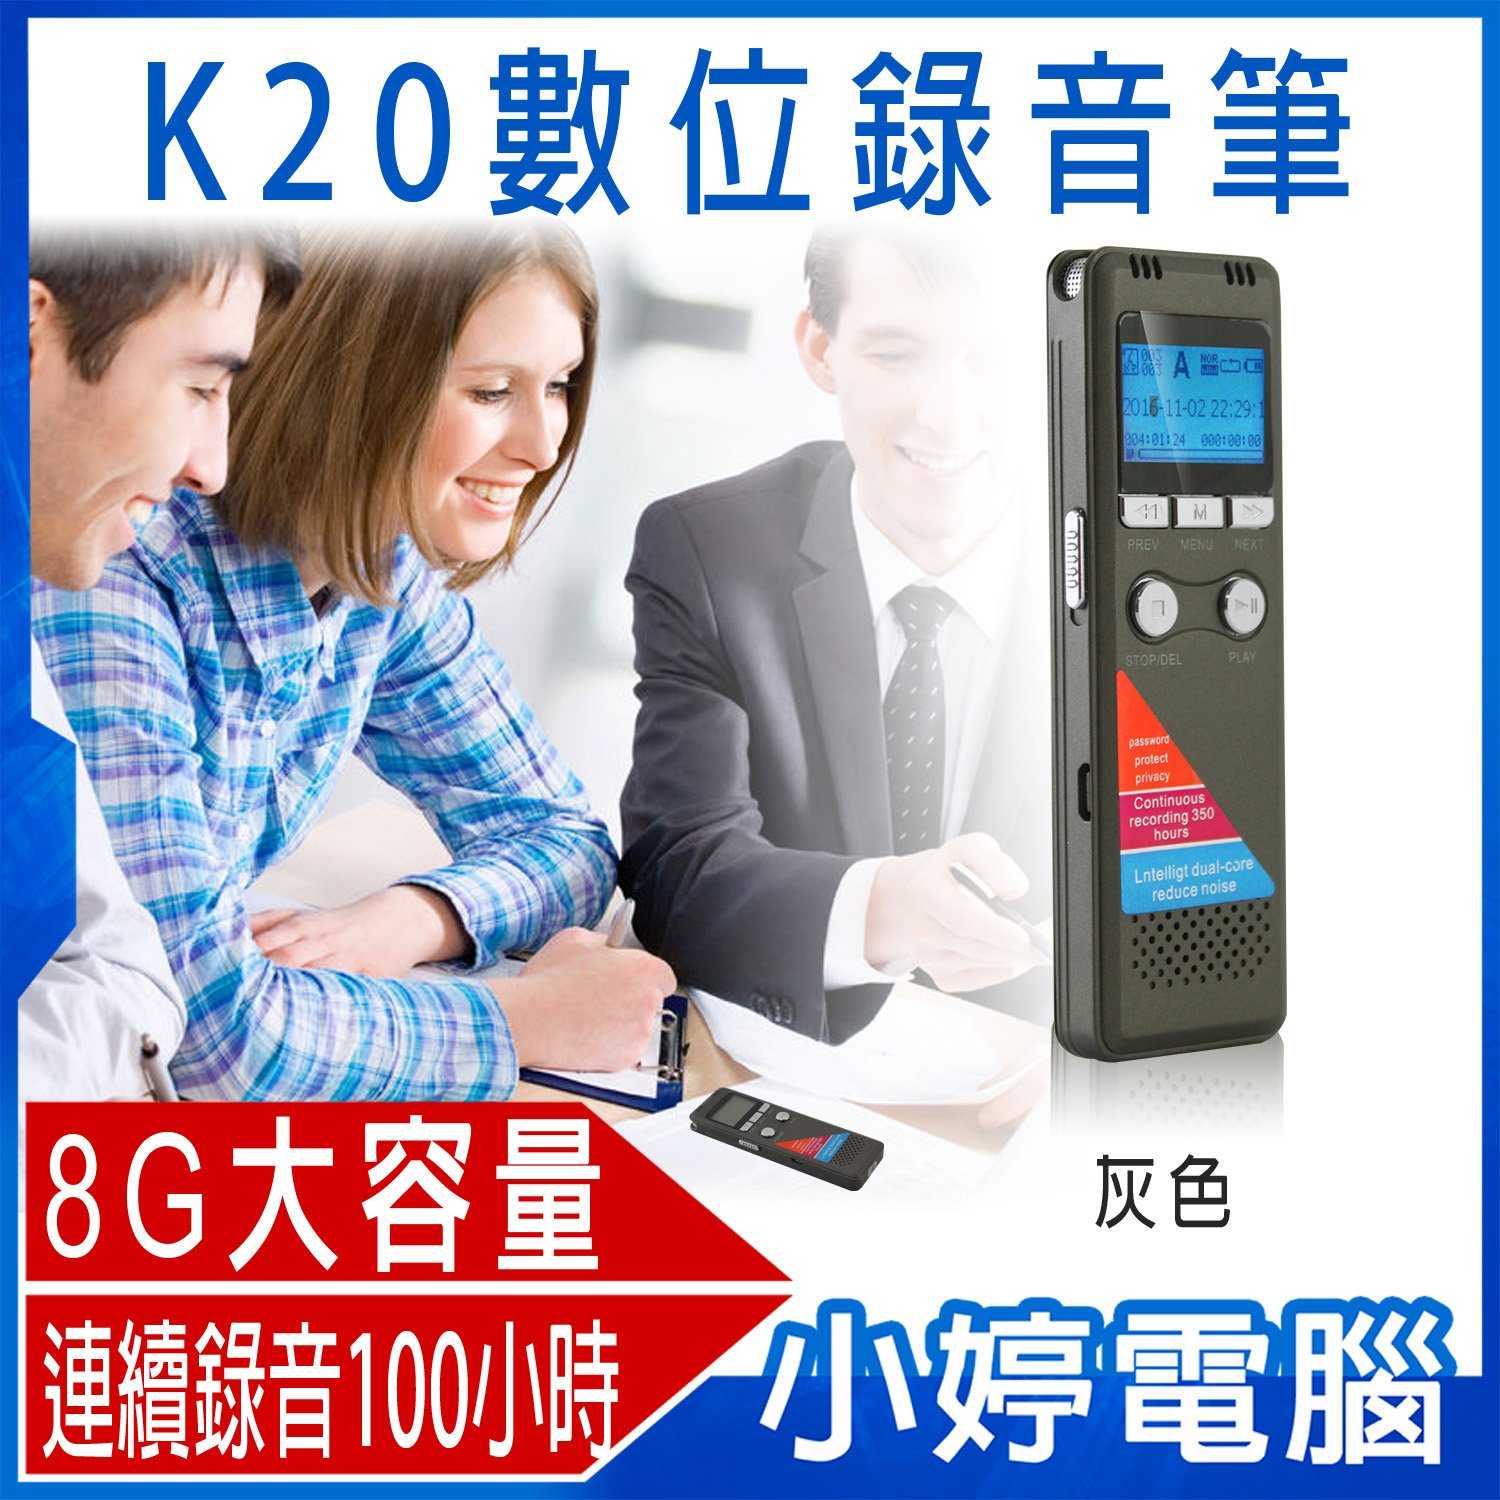 【小婷電腦】K20數位錄音筆 8G 雙核降噪 聲控錄音 斷電自動存檔 智慧循環錄音